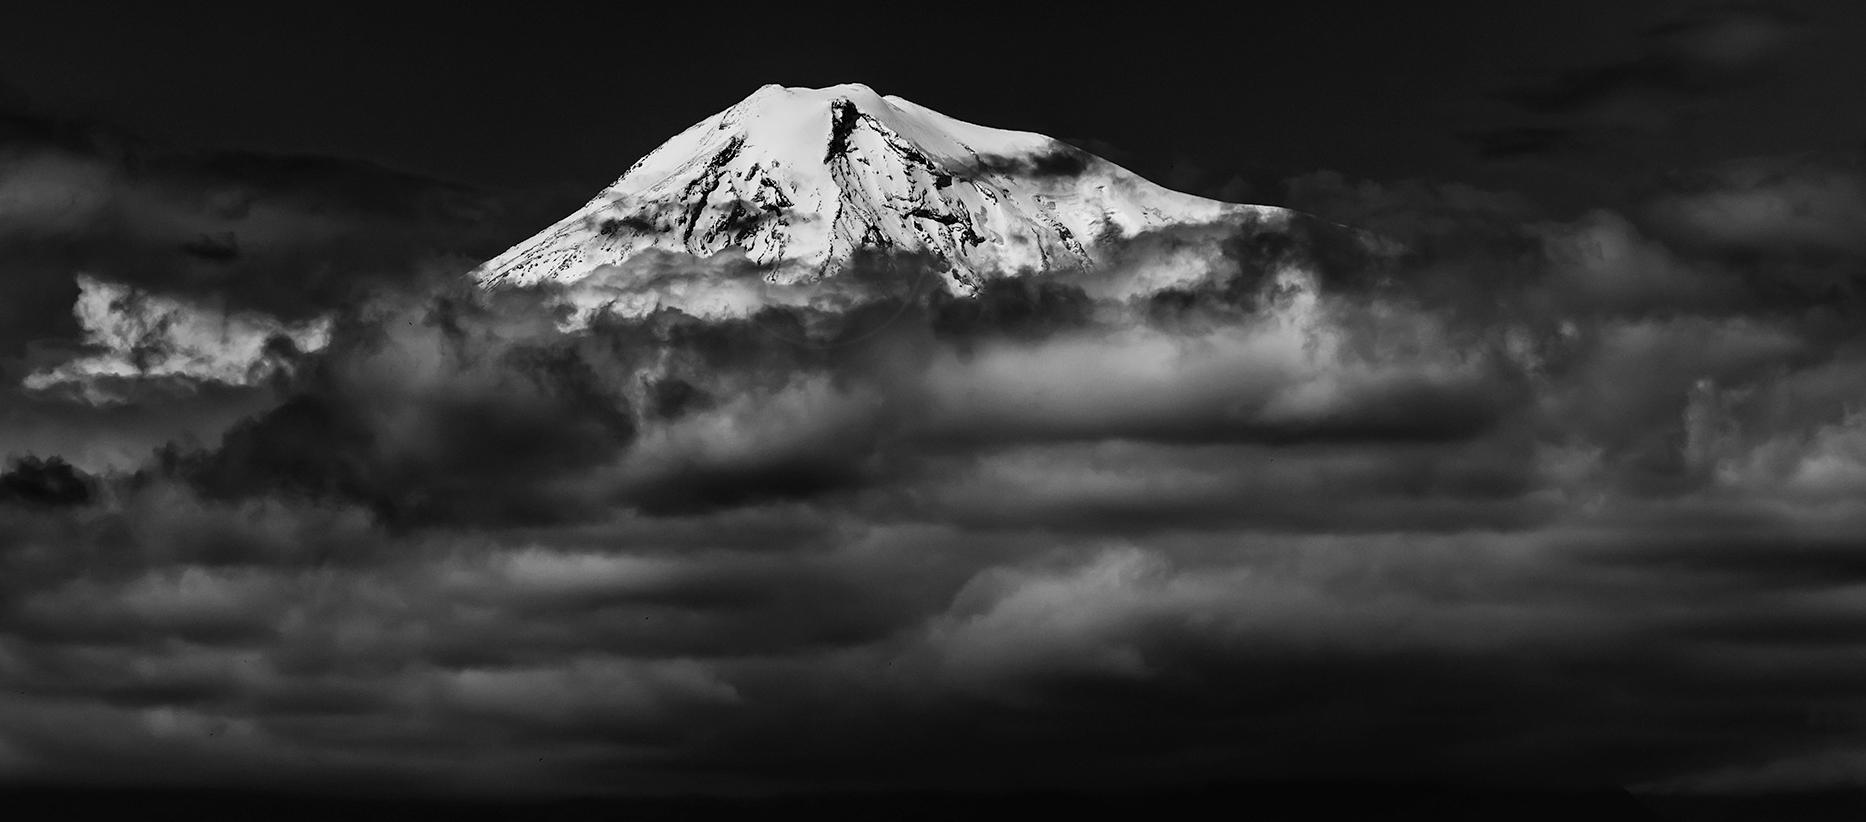 Le sommet du mont Ararat, symbole antique de tout ce qui est arménien, dépasse les nuages qui l'avaient caché, ne serait-ce que momentanément... 

Édition 1 de 5. Photographie imprimée sur toile, signée par l'artiste en bas à droite. 

Vahé